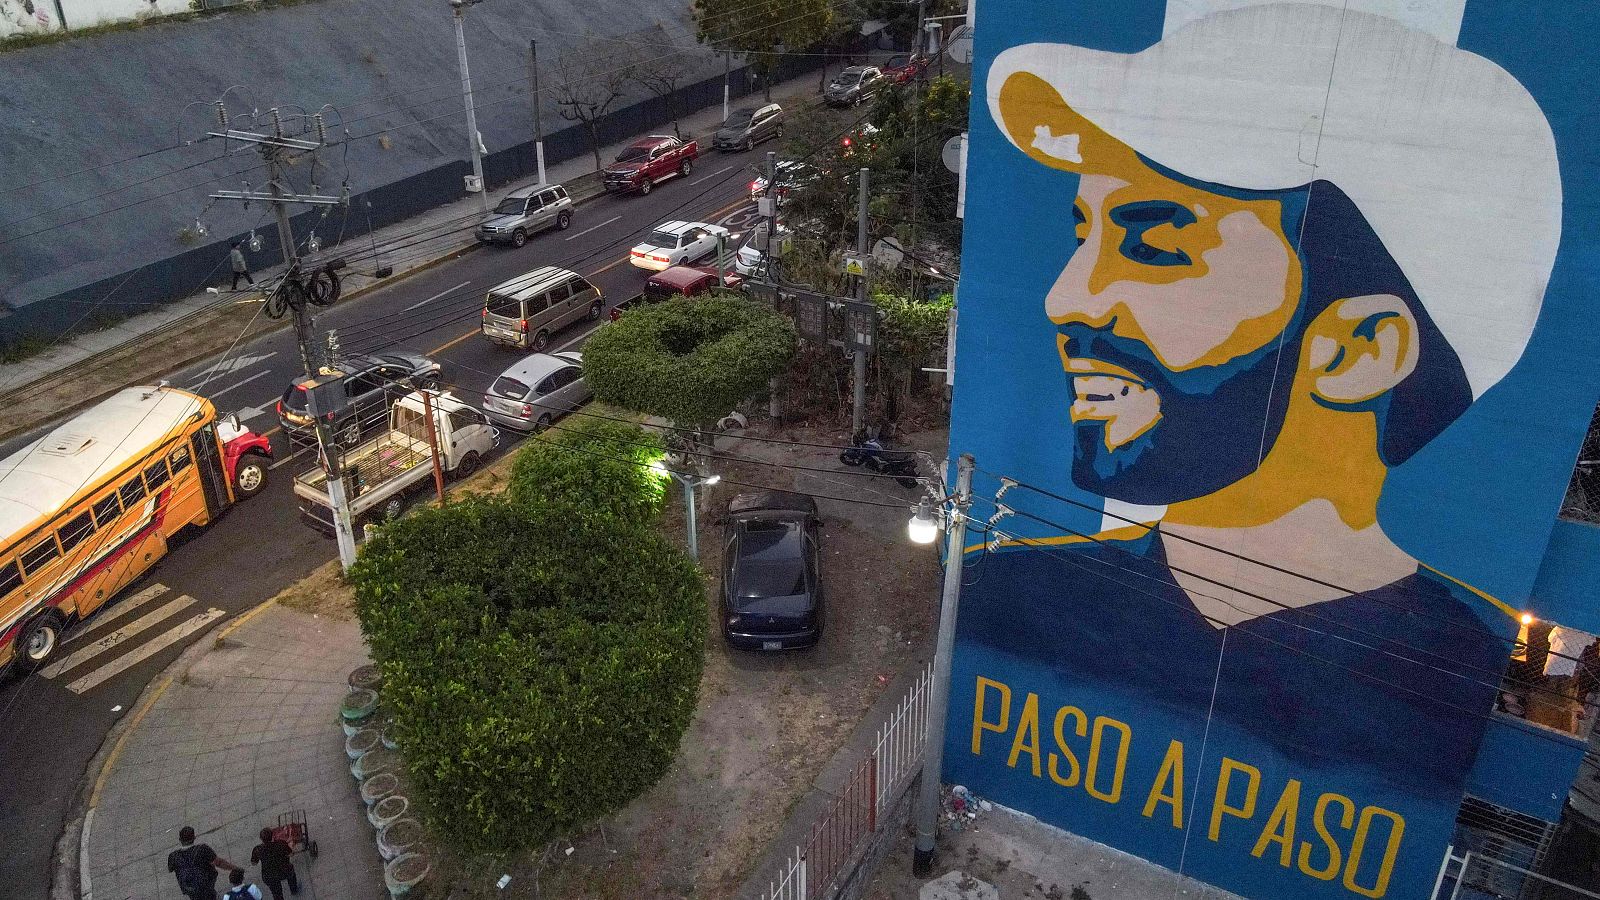 Elecciones El Salvador: claves de unos comicios donde Bukele se encamina a una reelección inédita y "anticonstitucional"